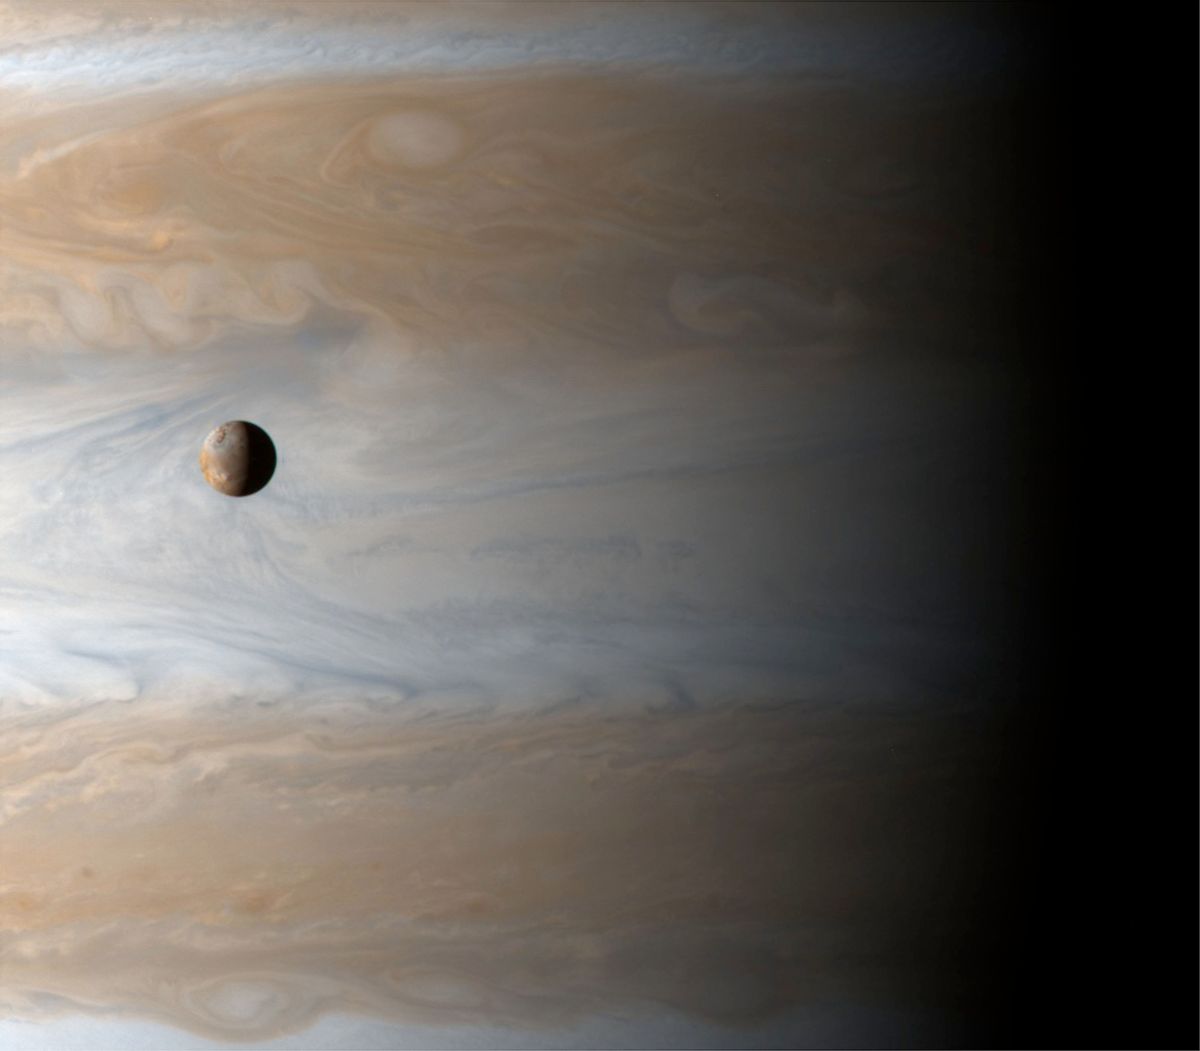 La nave espacial Cassini capta esta impresionante vista de Io, la tercera luna más grande de Júpiter